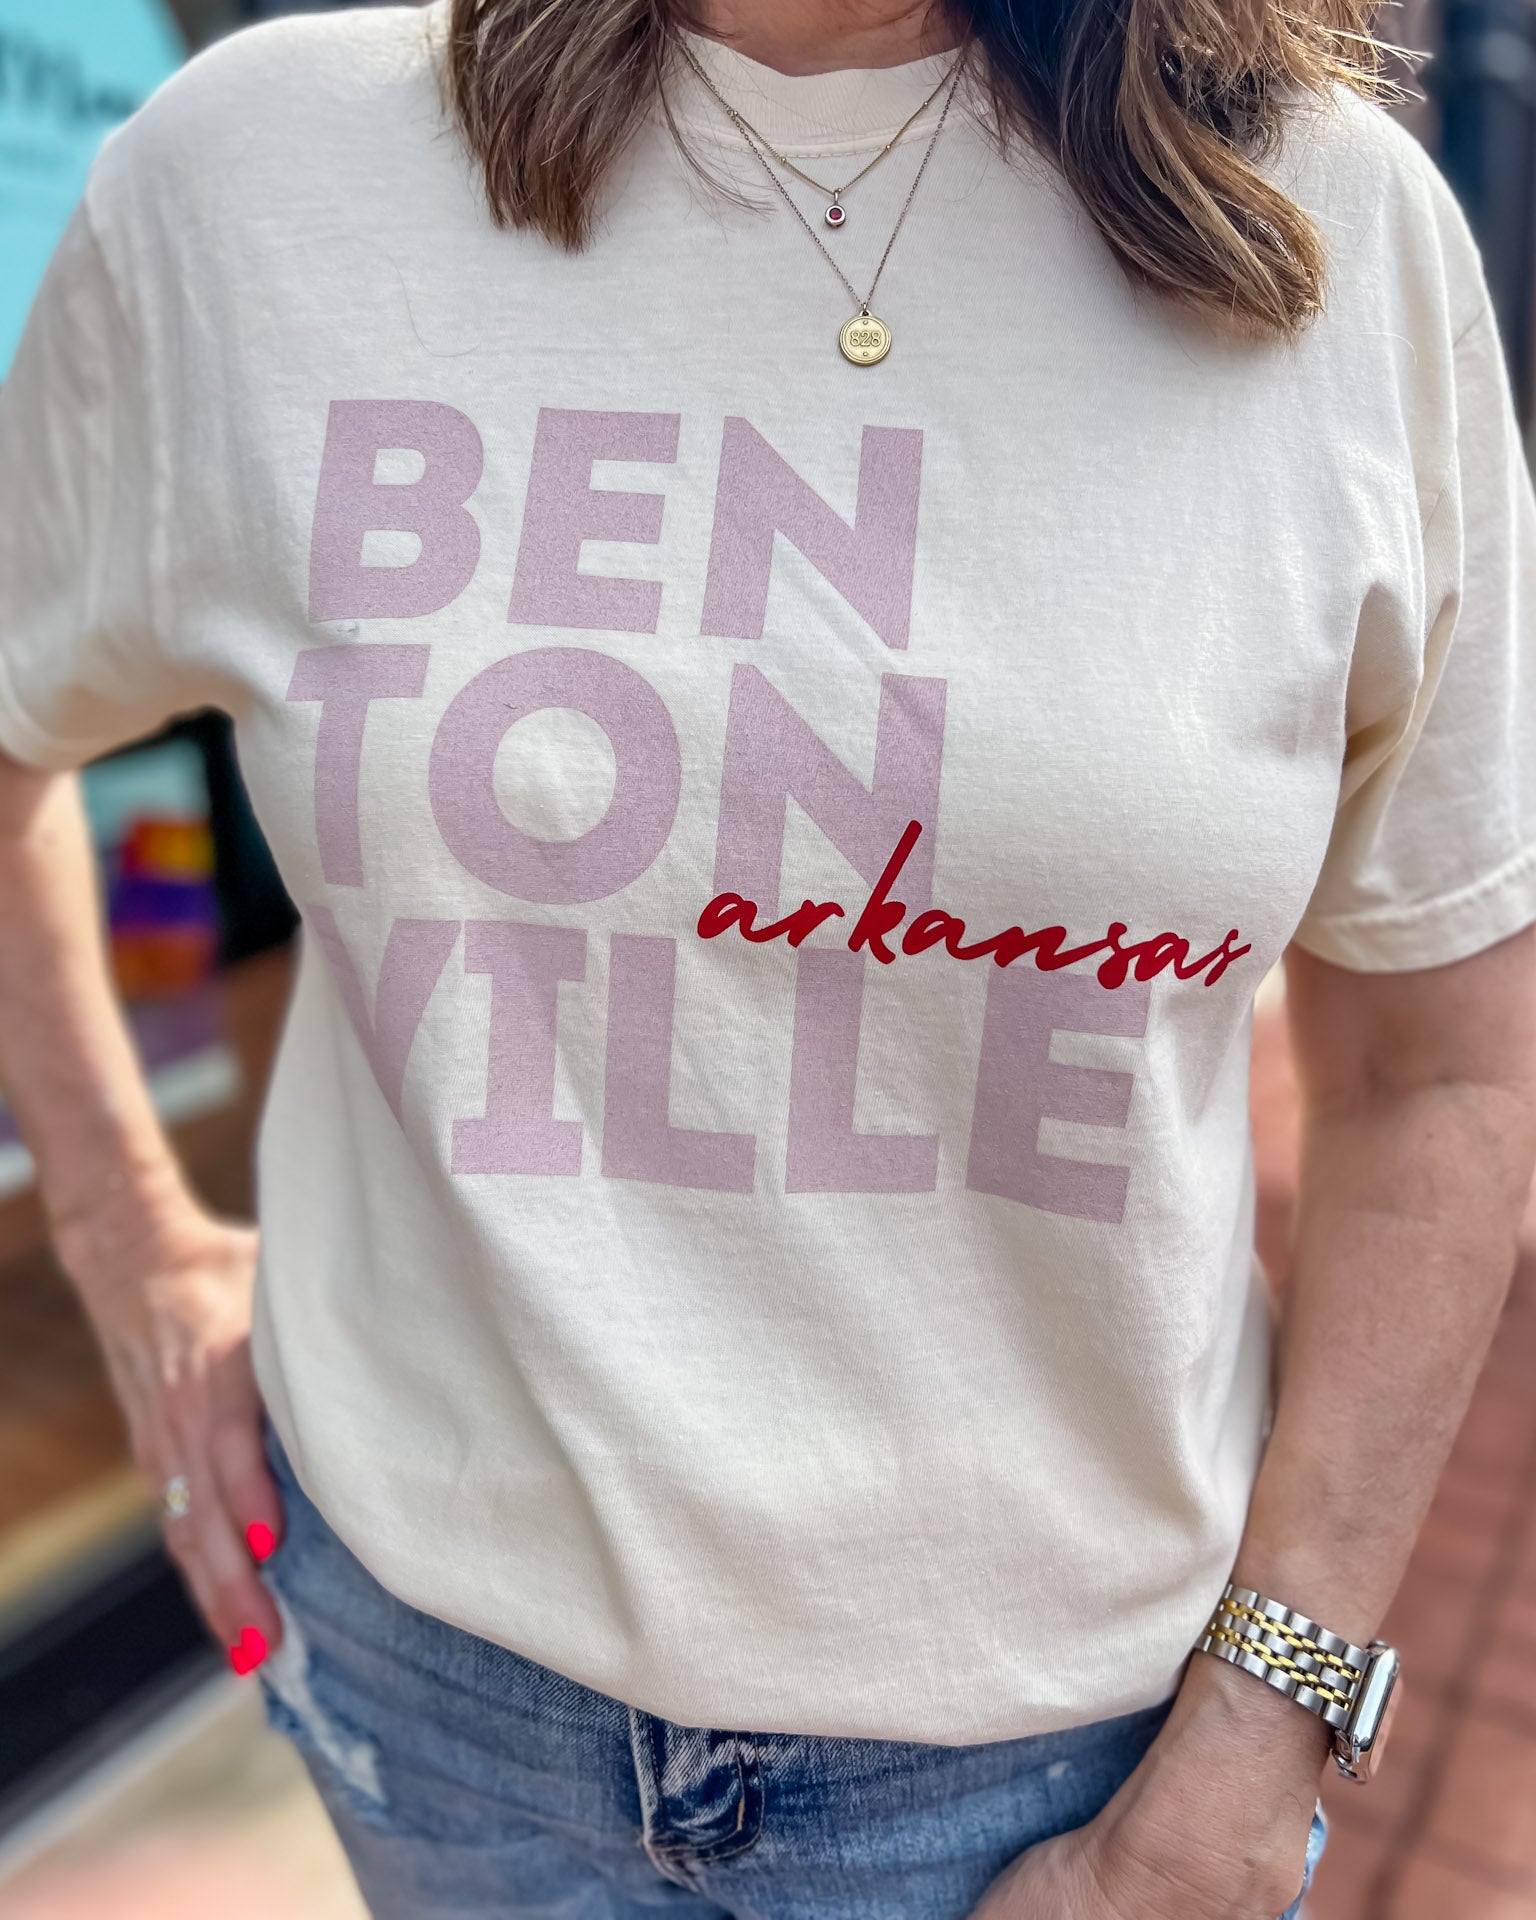 Bentonville around the block graphic t-shirt